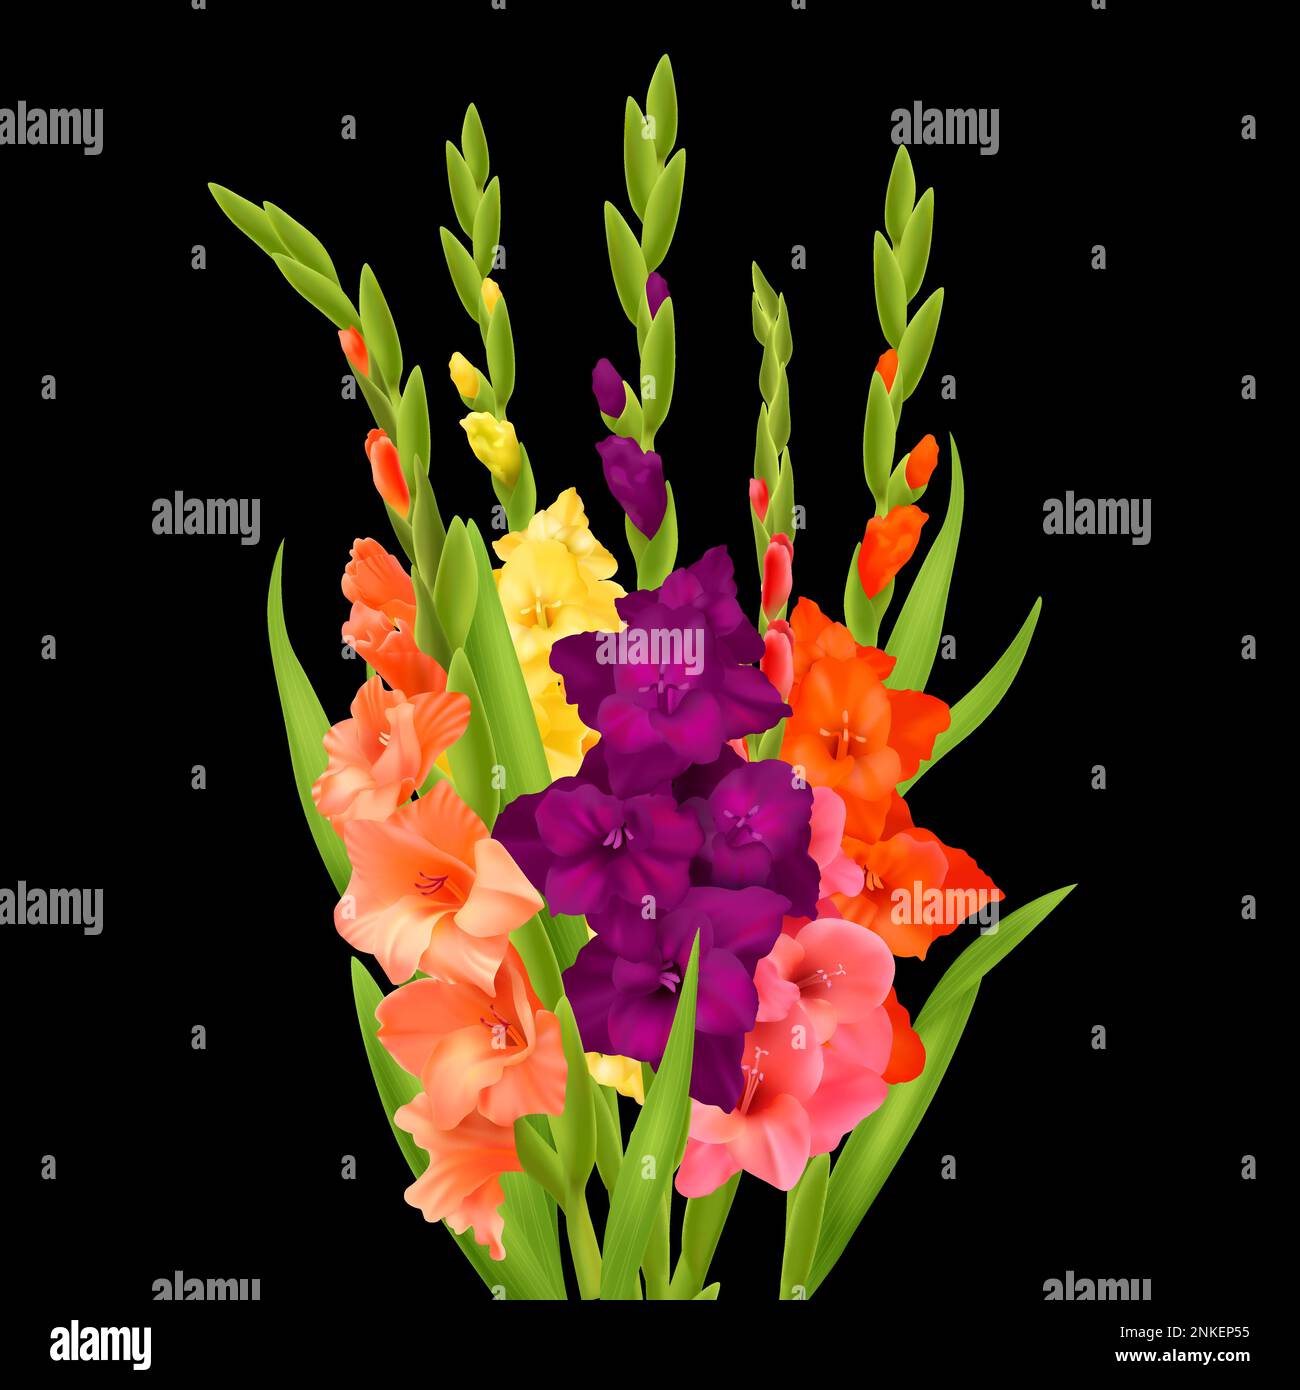 Bouquet réaliste de fleurs gladiolus orange rose jaune et violet sur fond noir illustration vectorielle Illustration de Vecteur